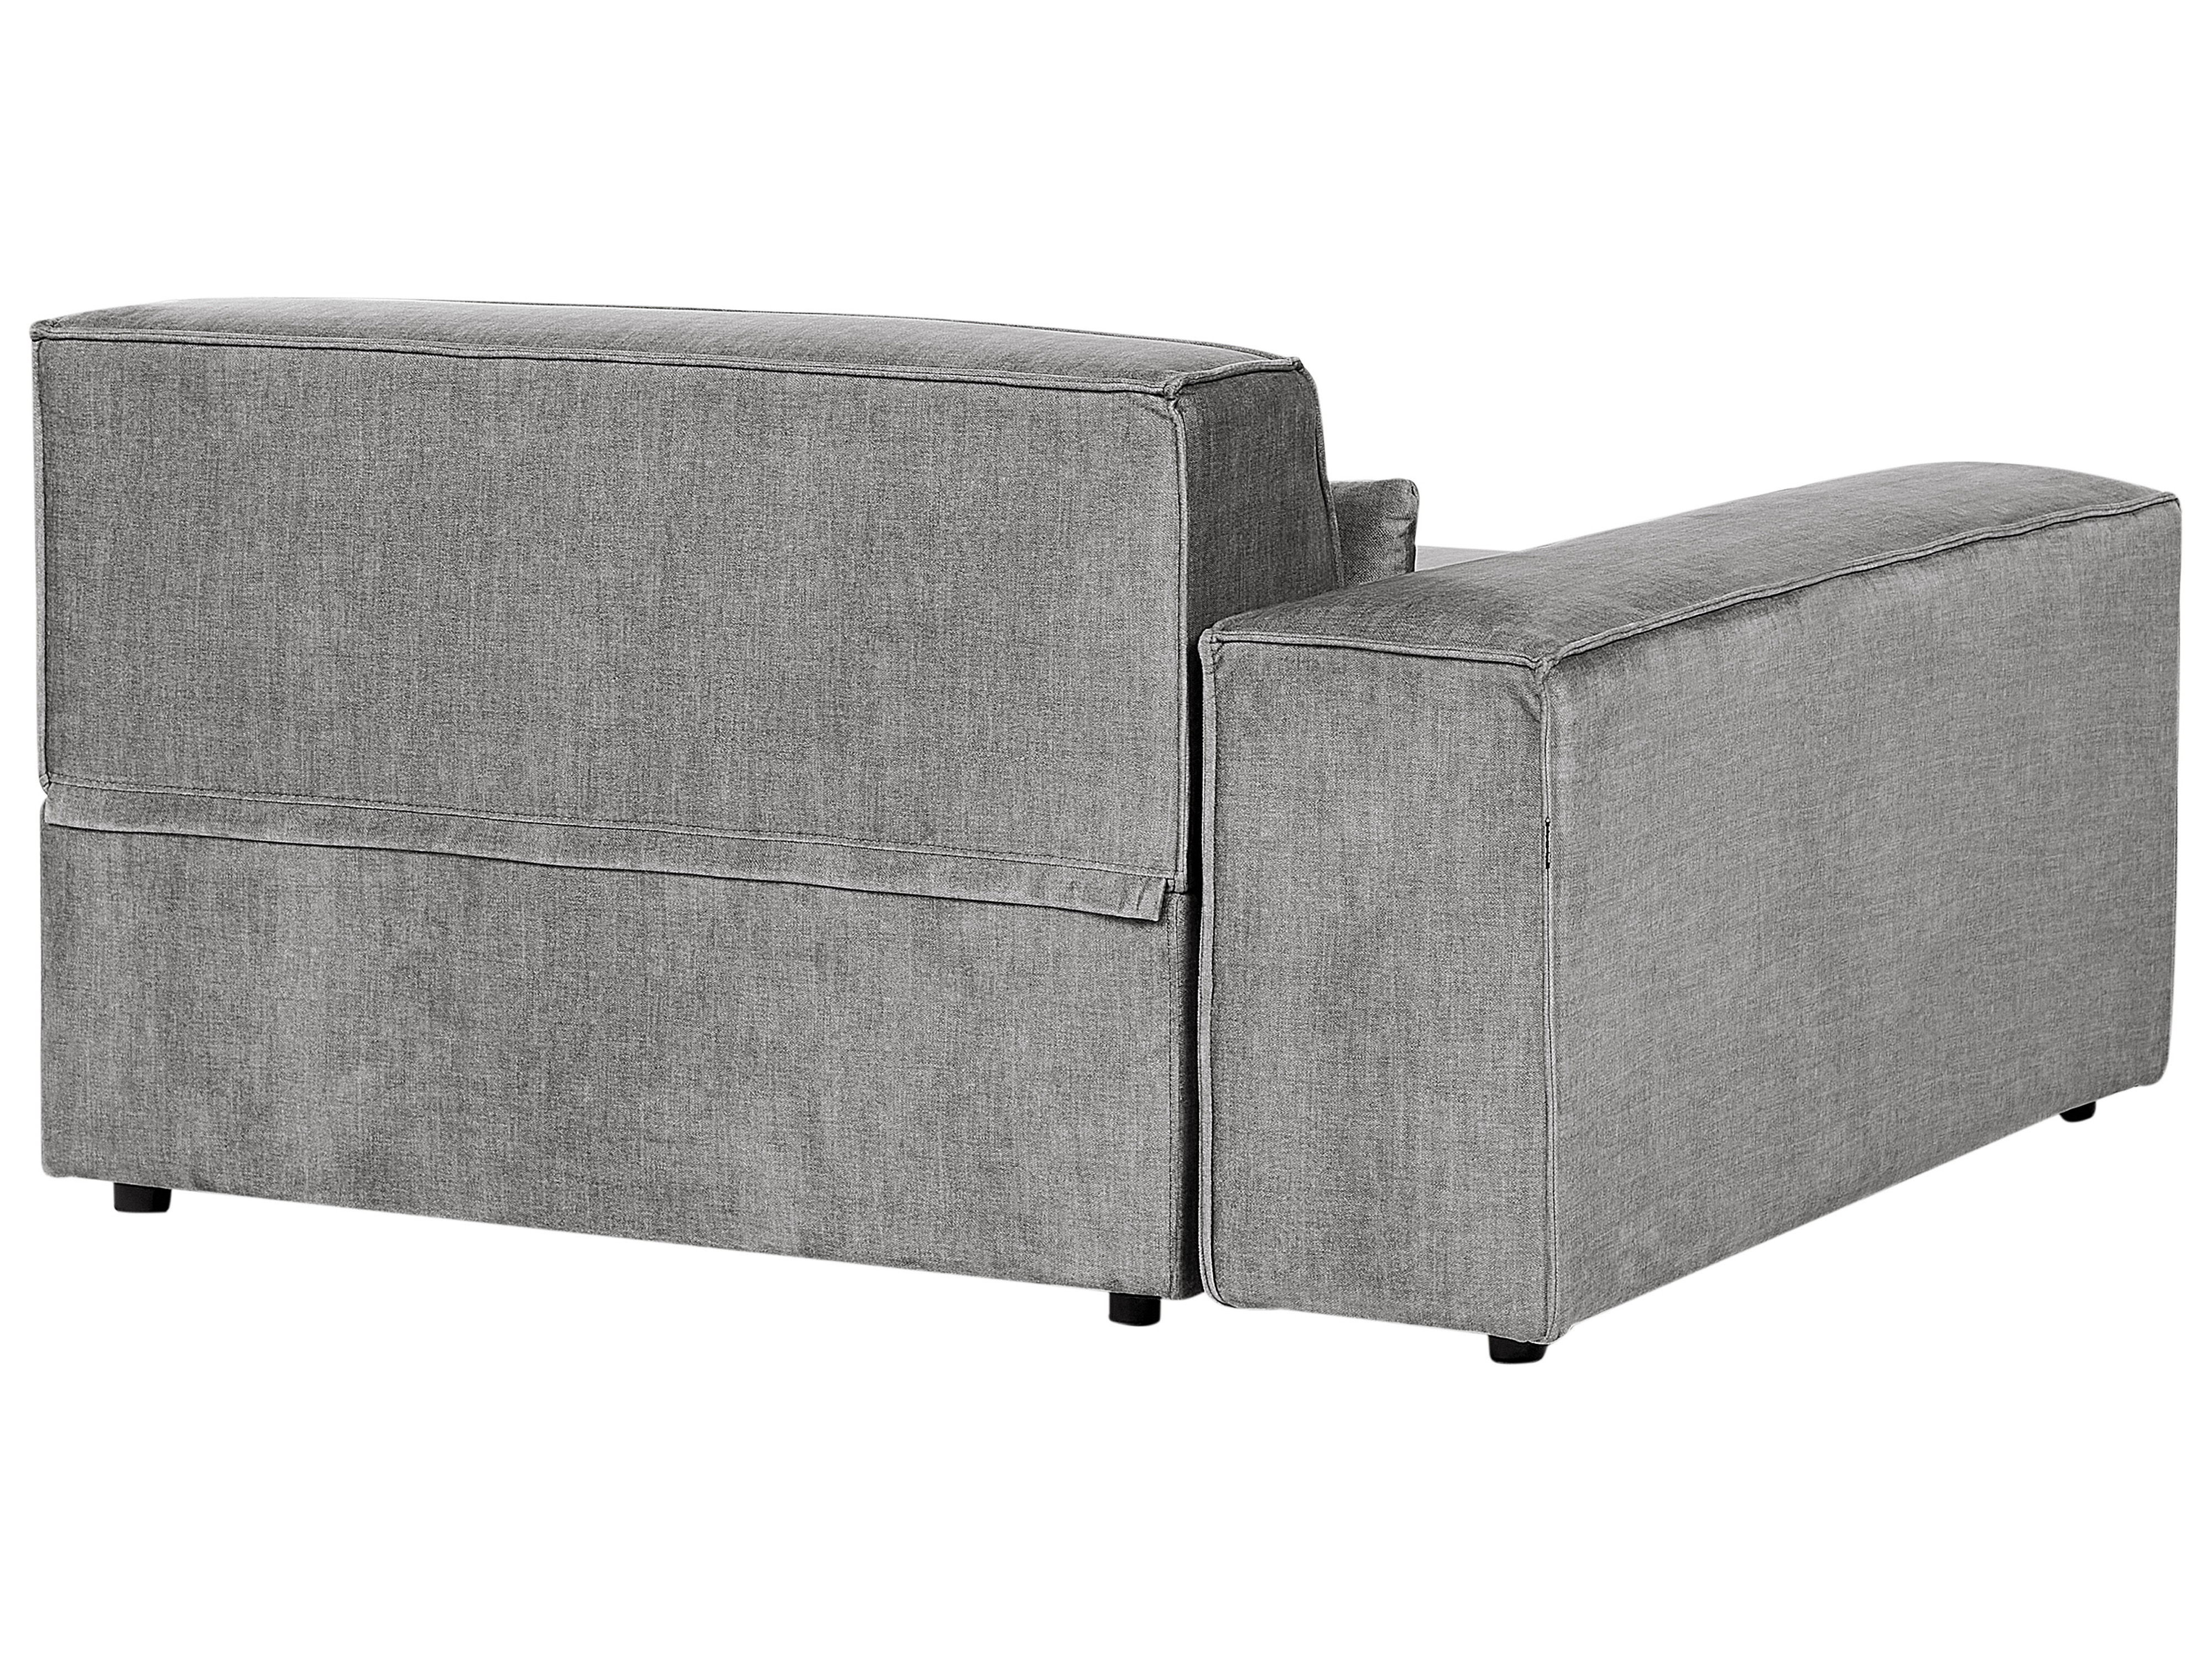 2 Seater Modular Fabric Sofa with Ottoman Grey HELLNAR_911766